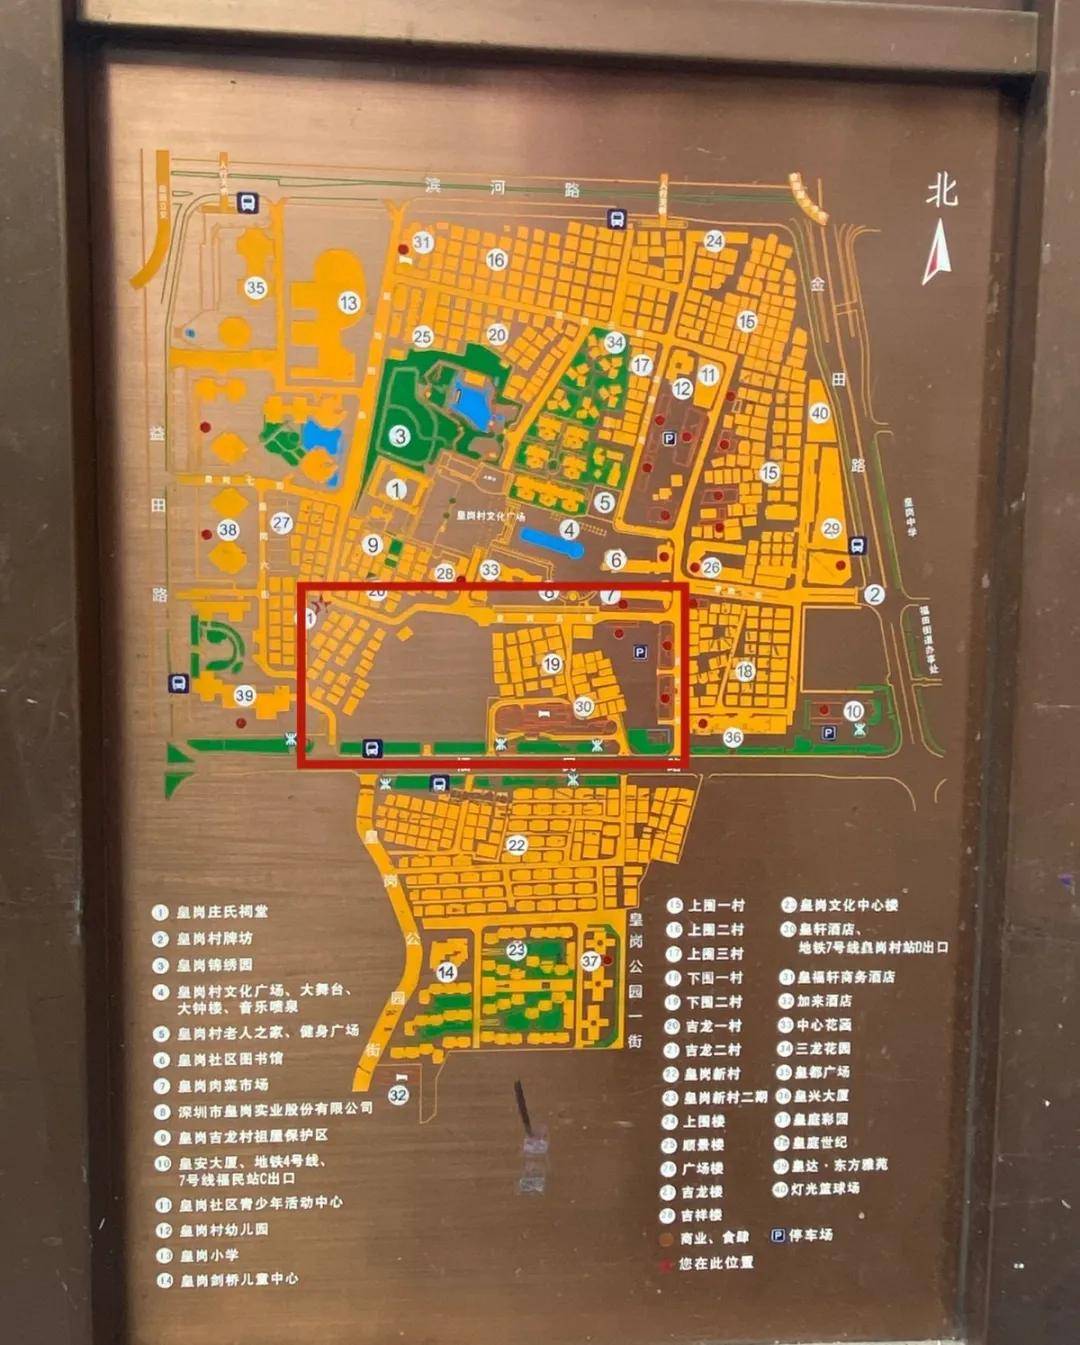 皇岗村地图图片